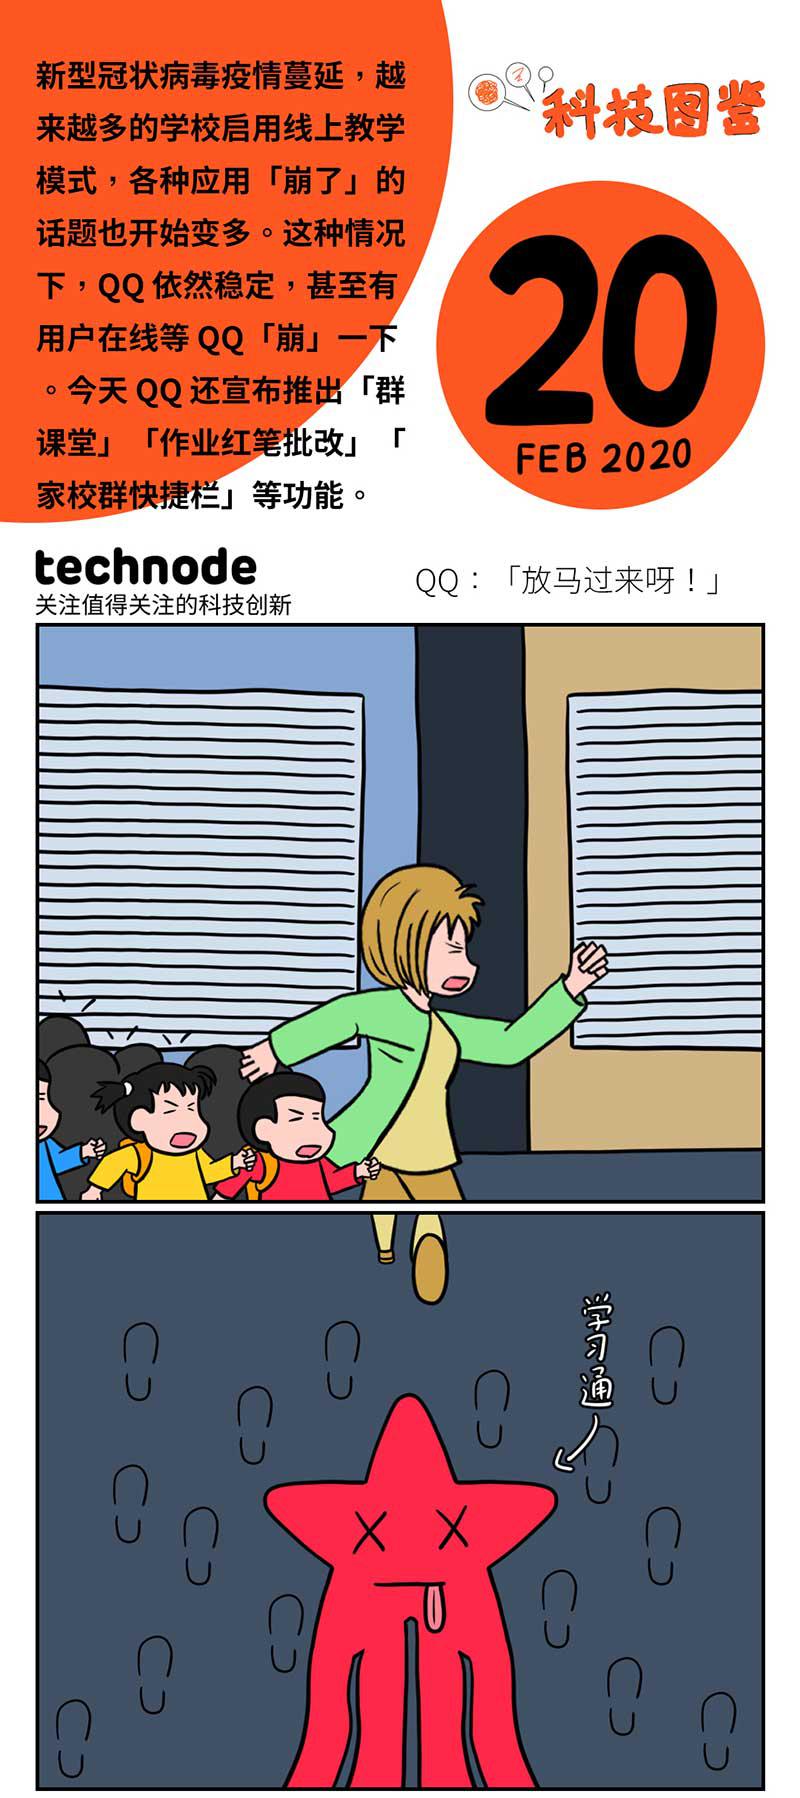 科技图鉴 | QQ 迎战线上开学